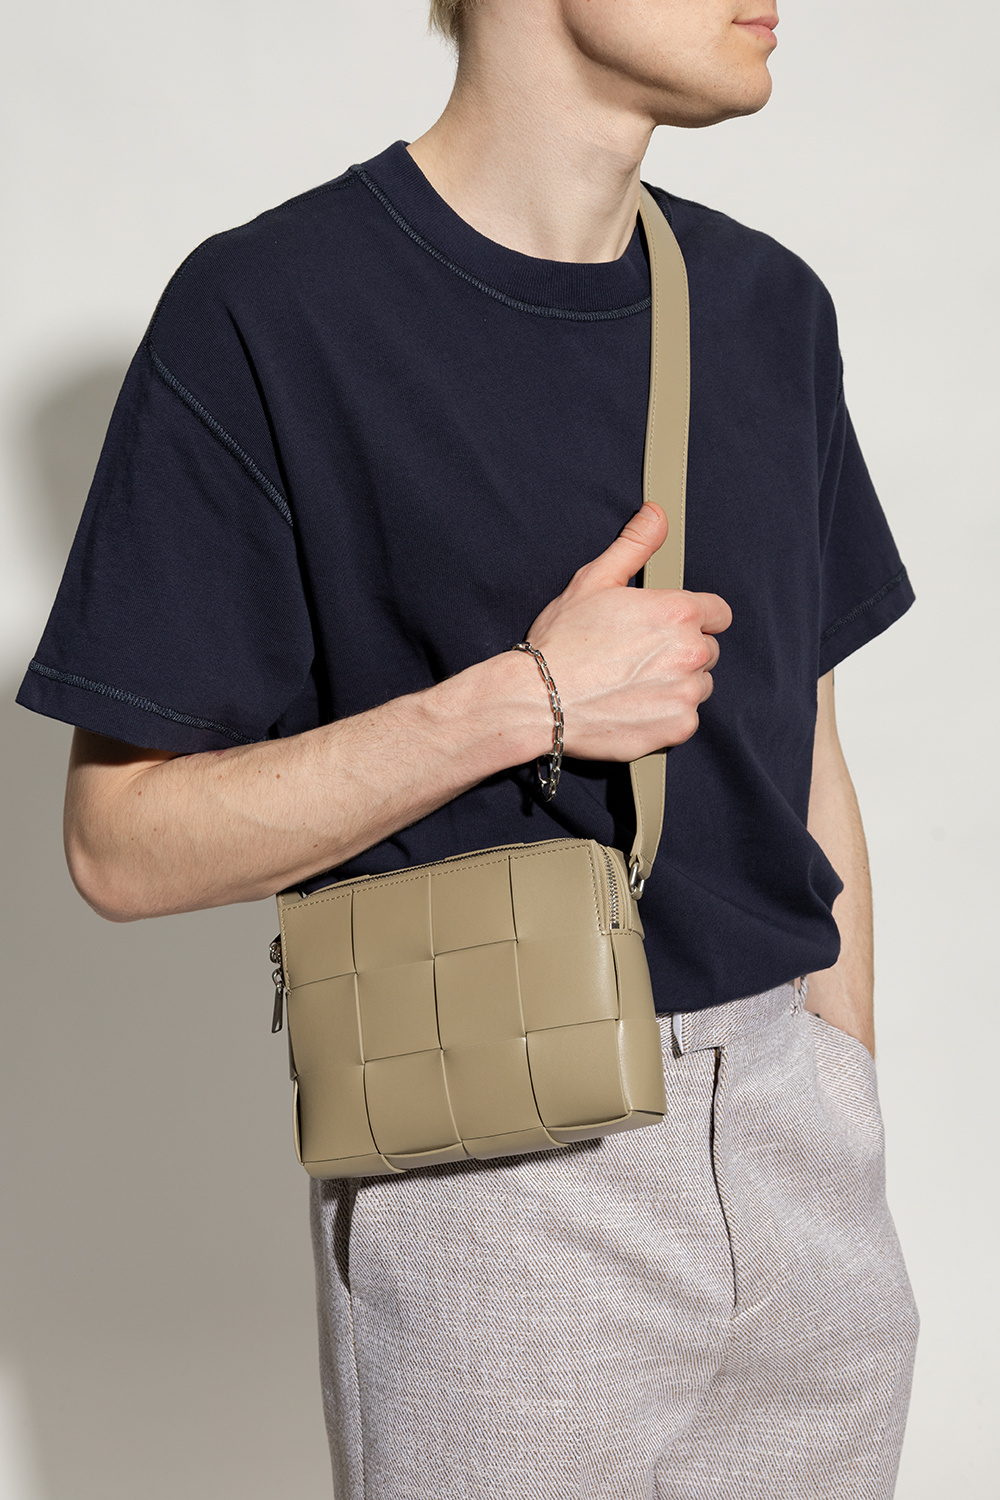 bottega Mount Veneta ‘Cassette Small’ shoulder bag